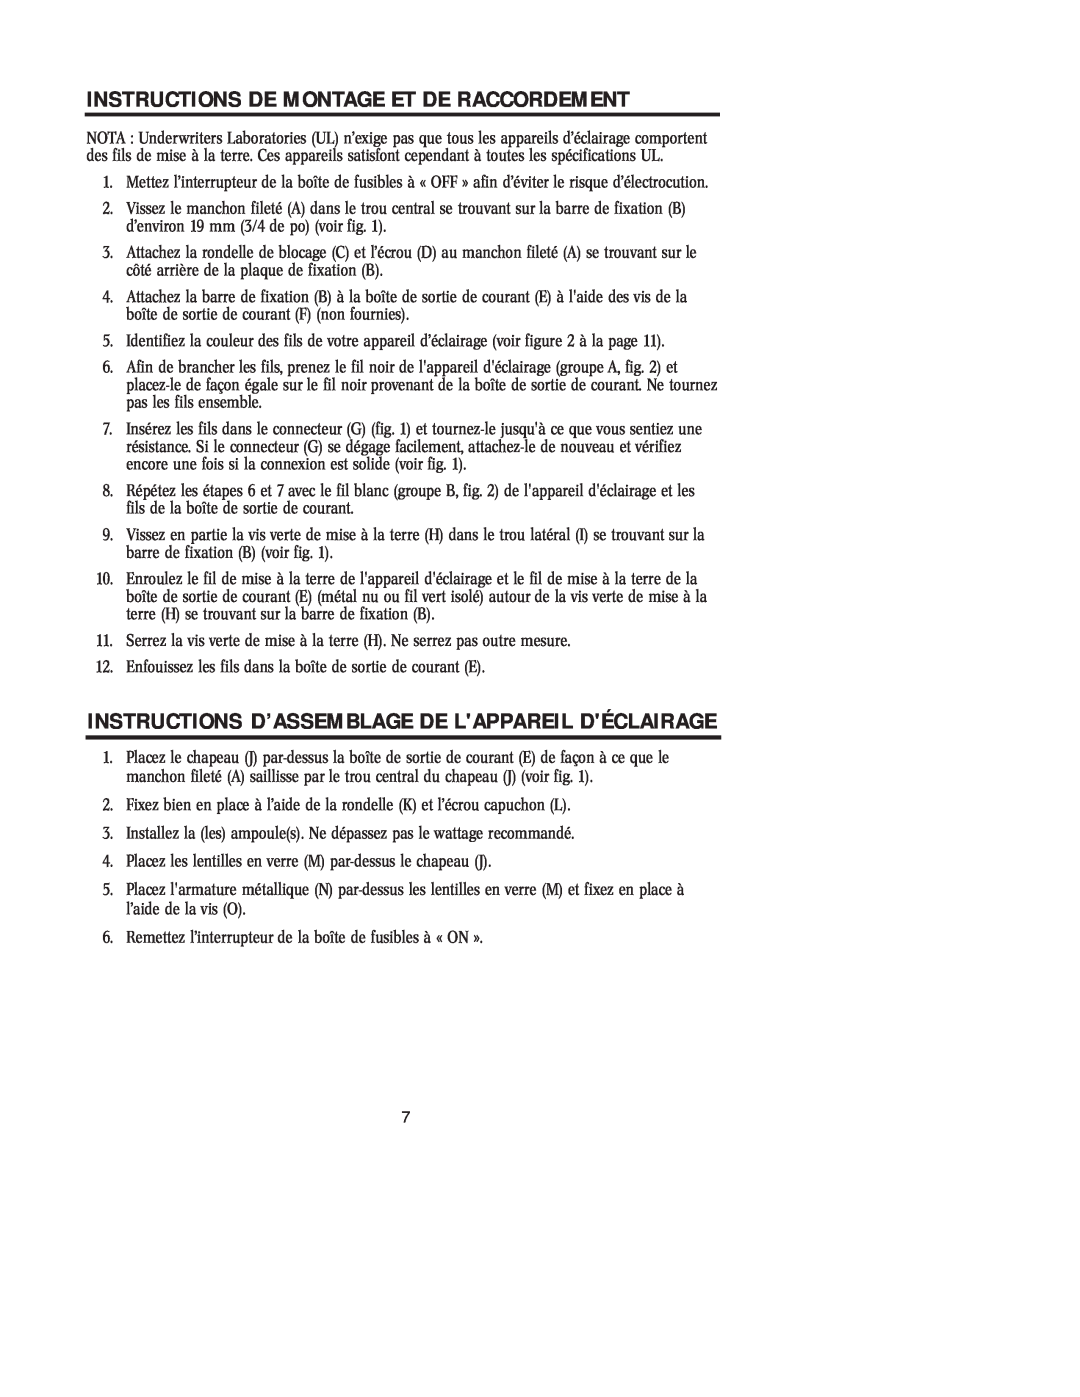 Westinghouse W-207 071705 Instructions D’Assemblage De Lappareil Déclairage, Instructions De Montage Et De Raccordement 